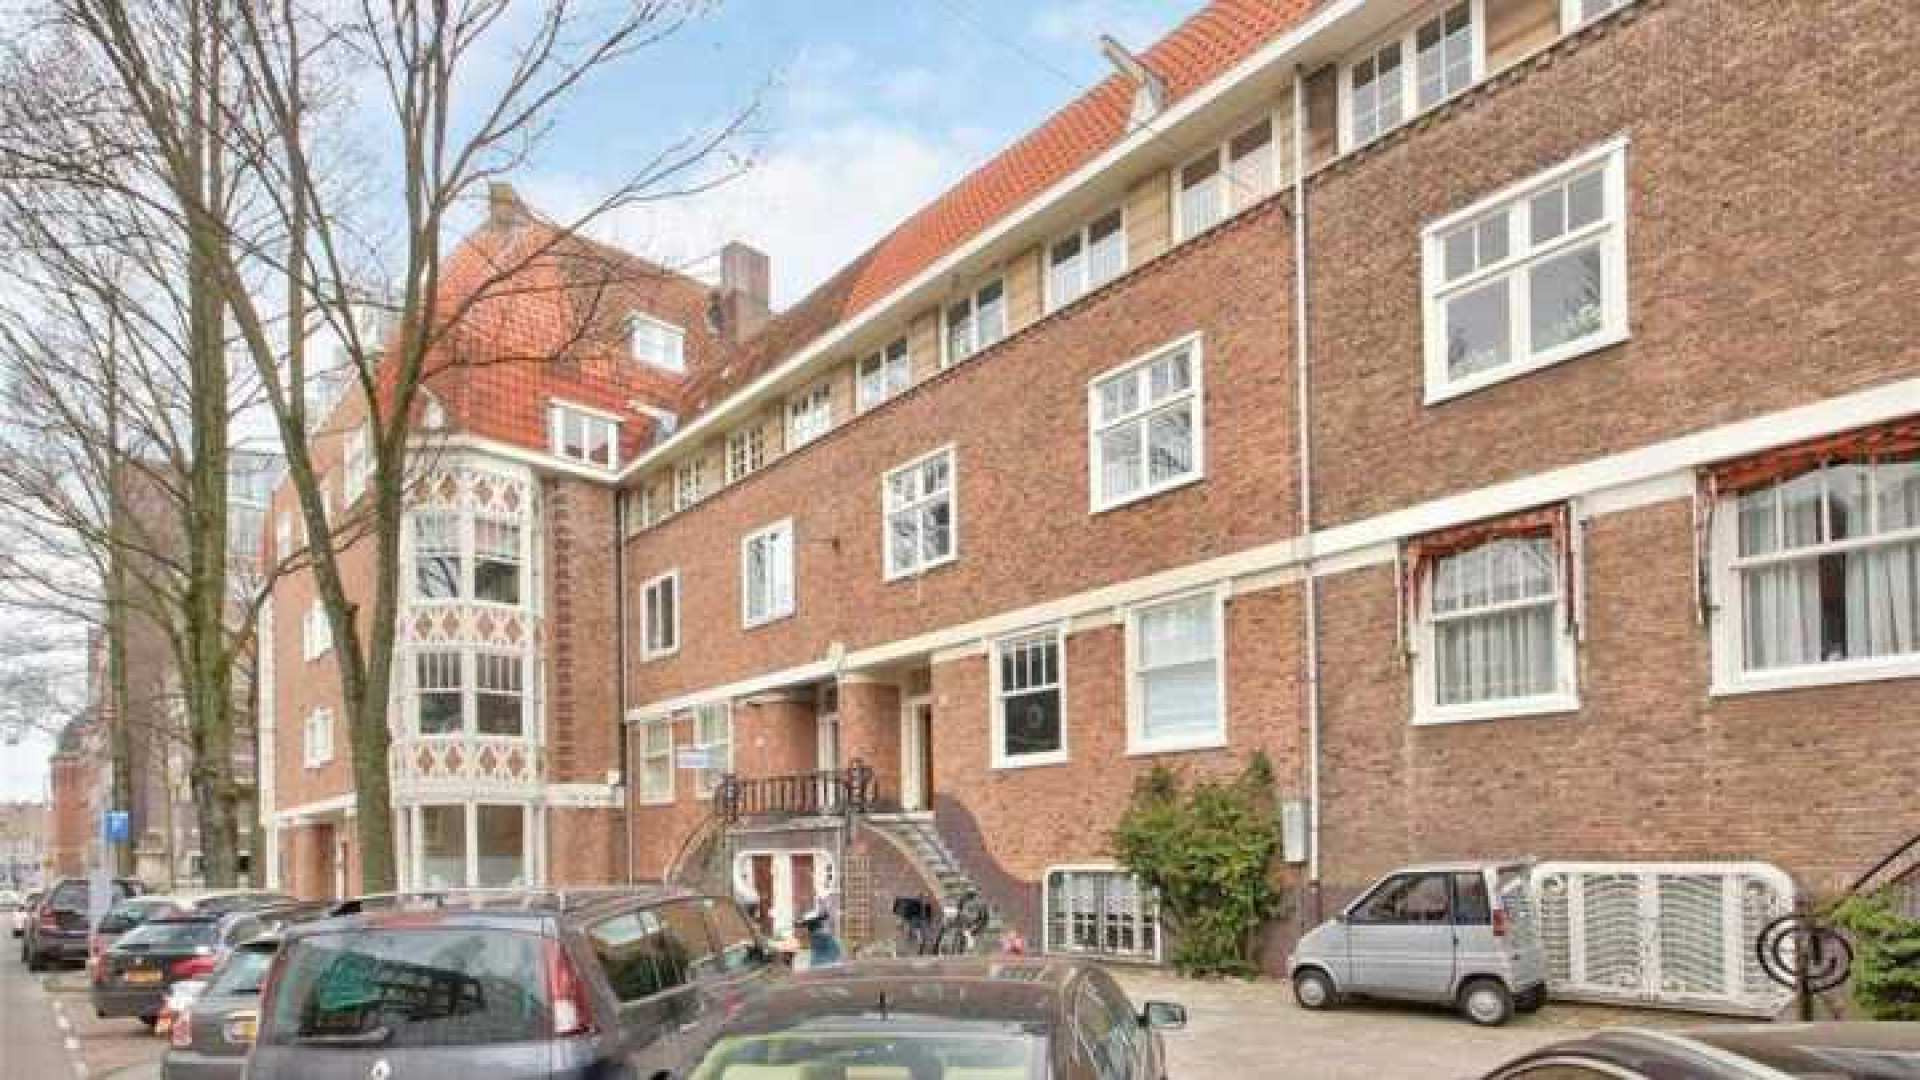 Nicolette KLuijver verkoopt eindelijk haar huis in Amsterdam Zuid. Zie foto's